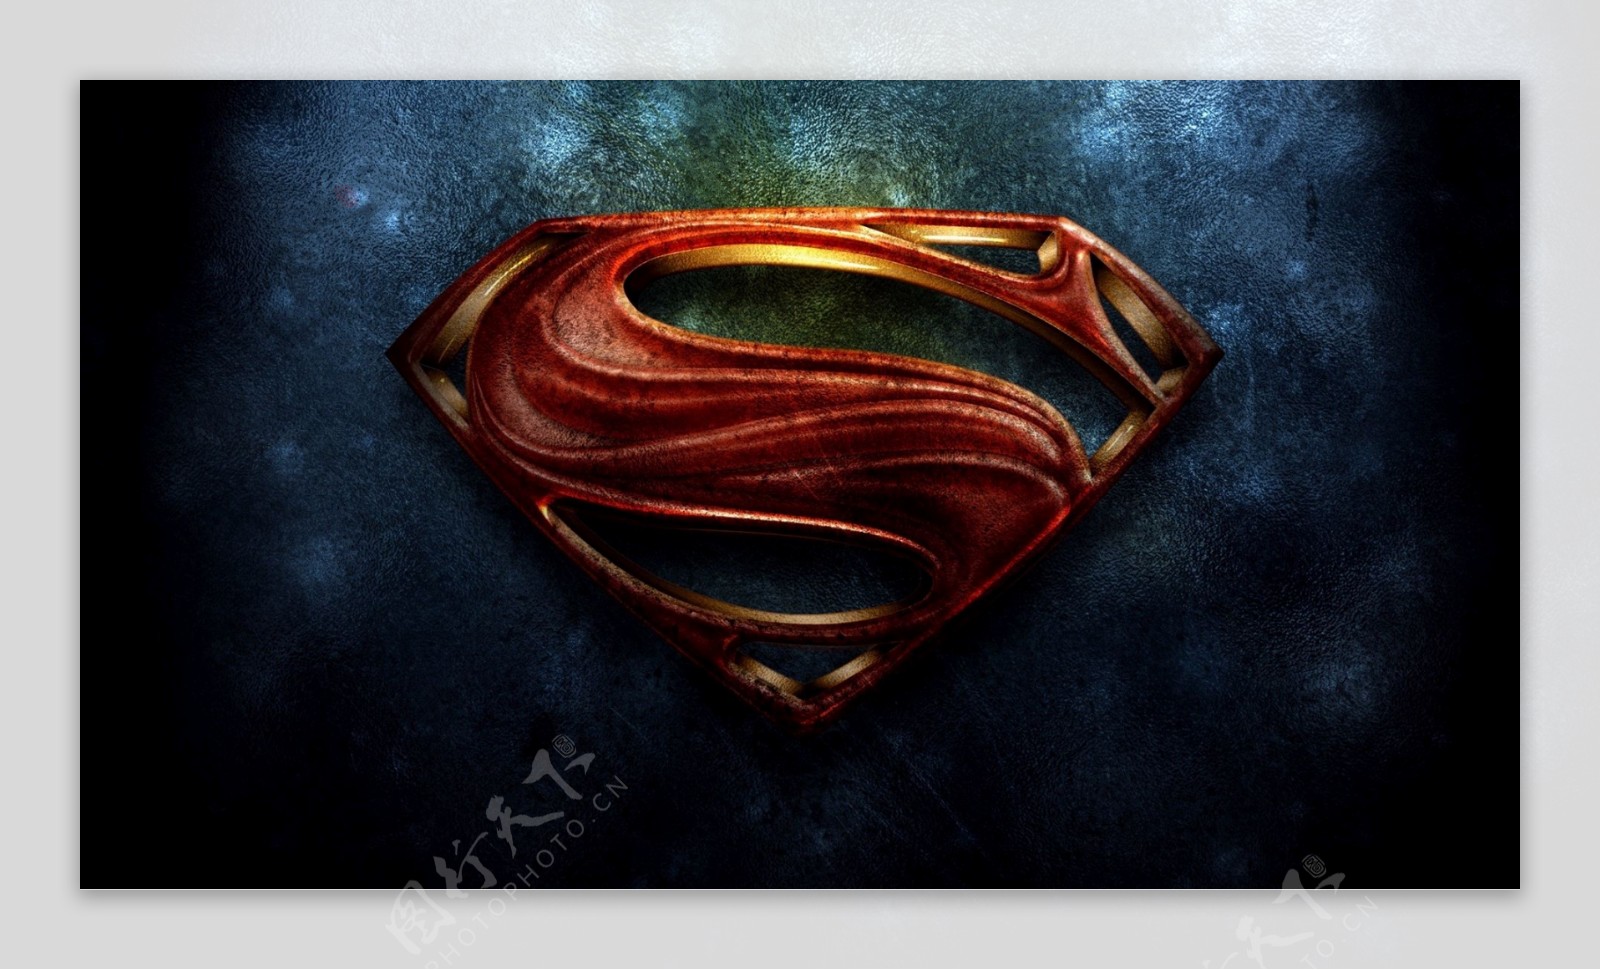 超人标志宽屏壁纸图片